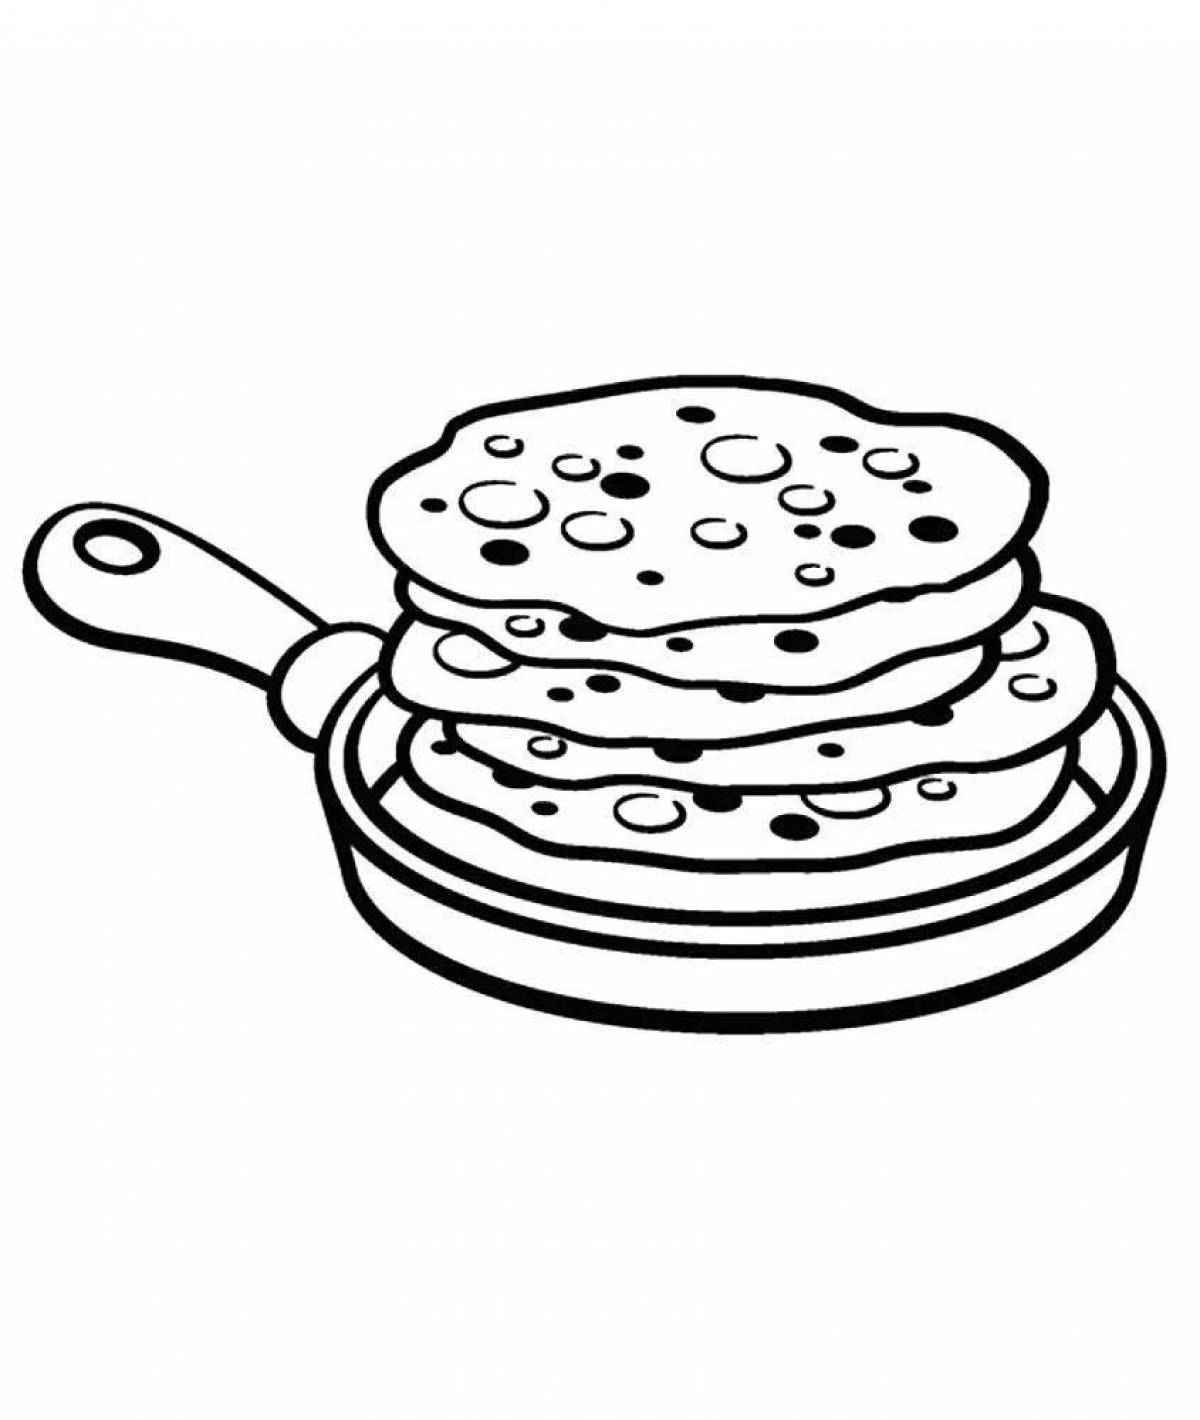 Crispy pancake coloring page